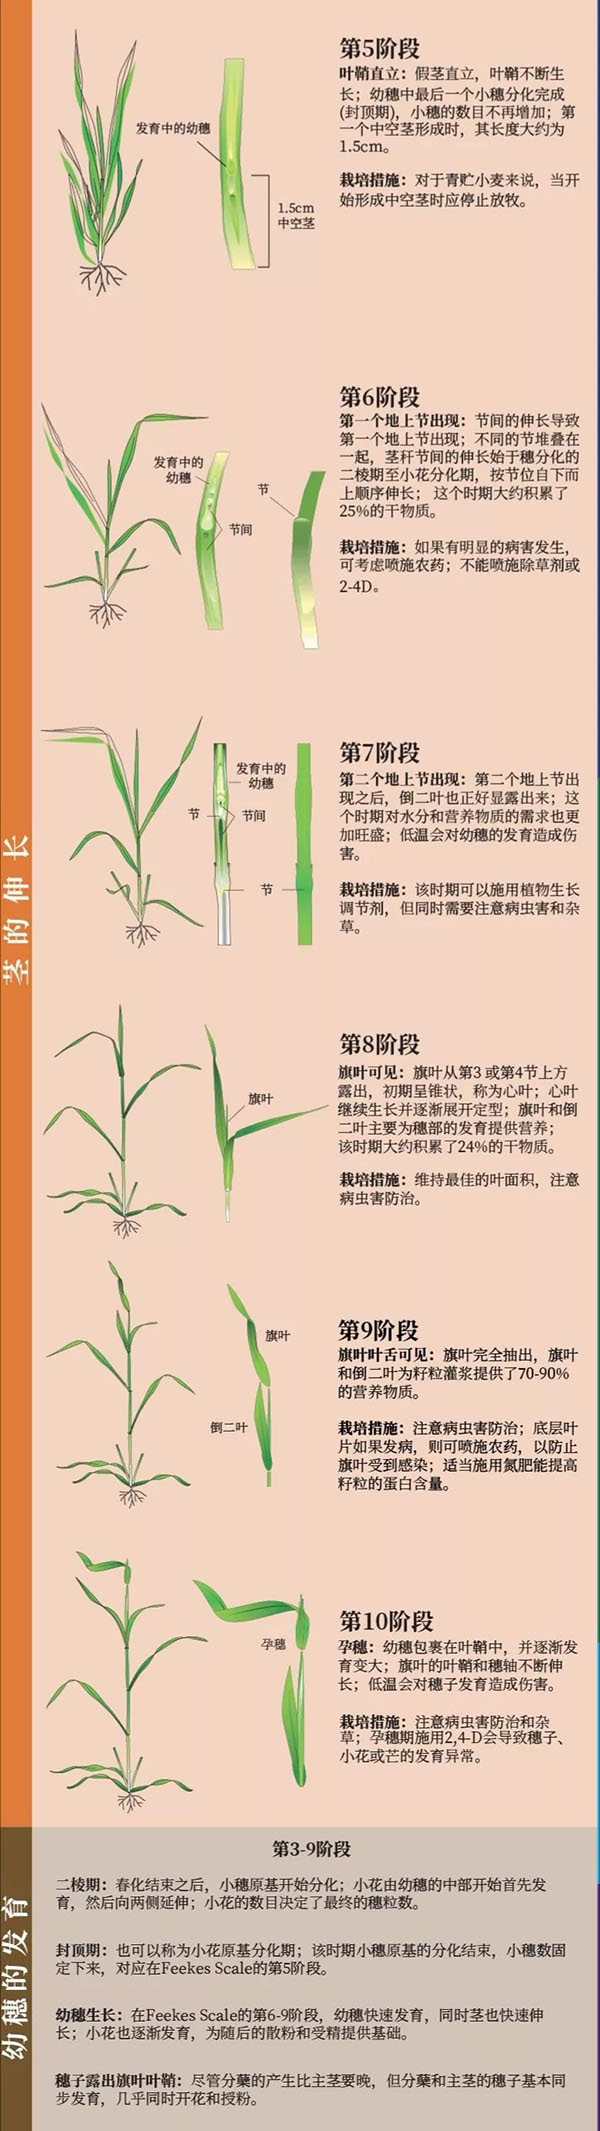 从发芽到成熟,小麦生长发育图解!栽培措施看